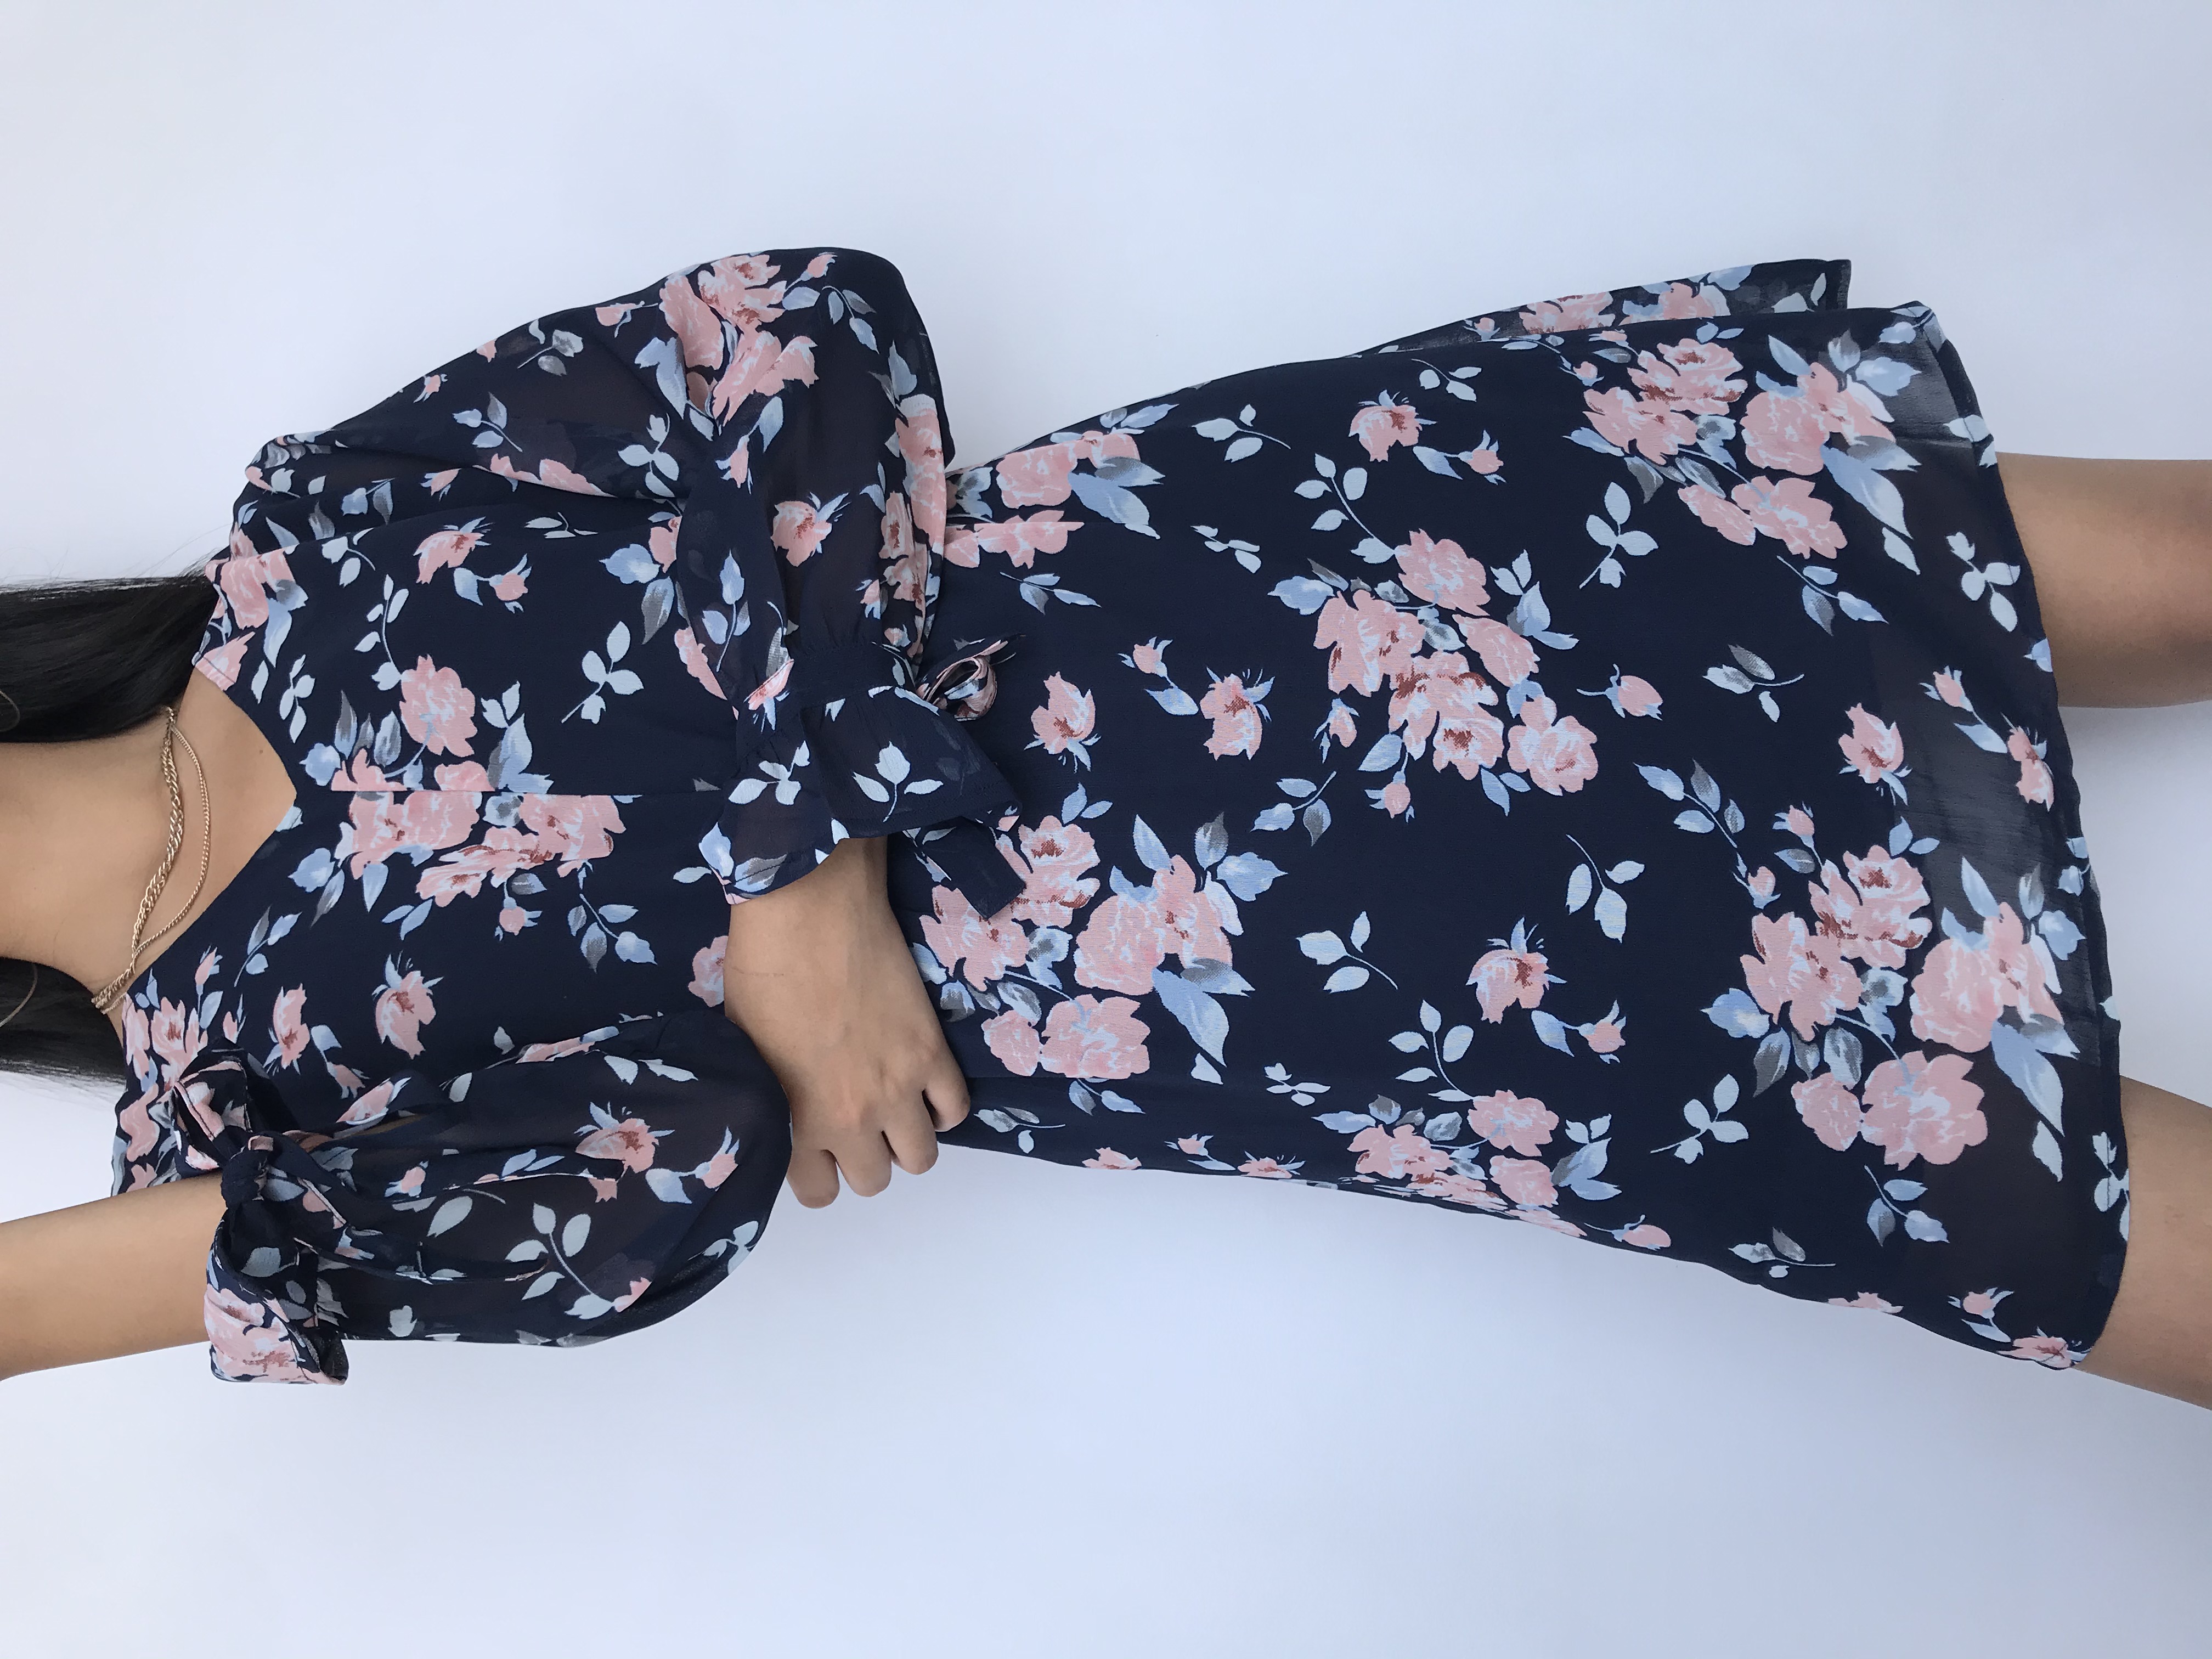 Vestido de gasa azul con estampado de flores rosadas, manga larga con volante y lazo para amarrar en el puño, escote ojal y botón posterior, elástico en la cintura y lleva forro
Talla M